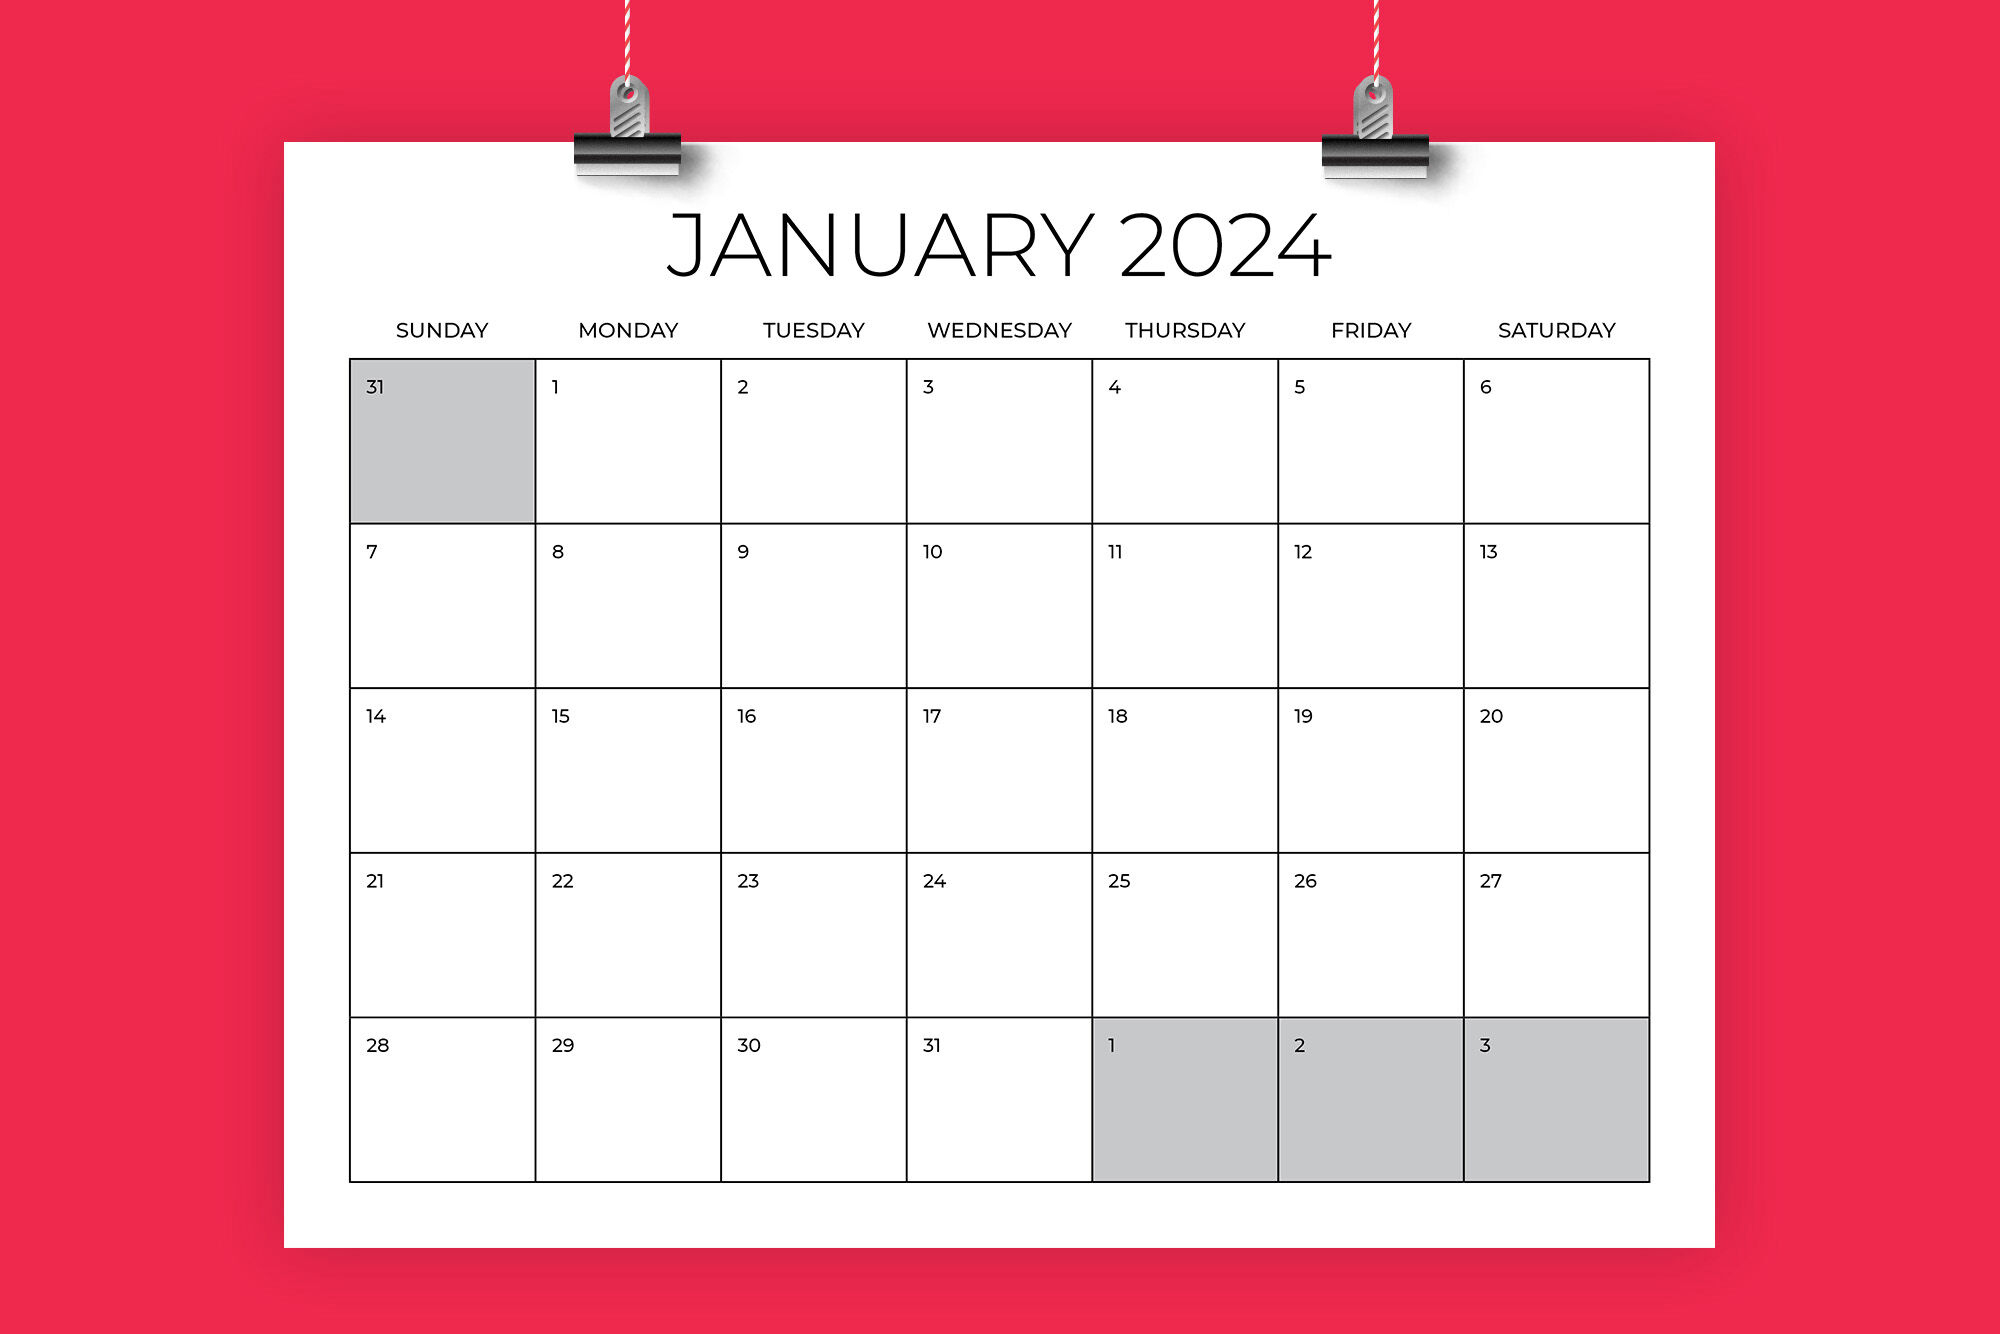 Printable Calendar 2024 Mauritius Printable Calendar 2024